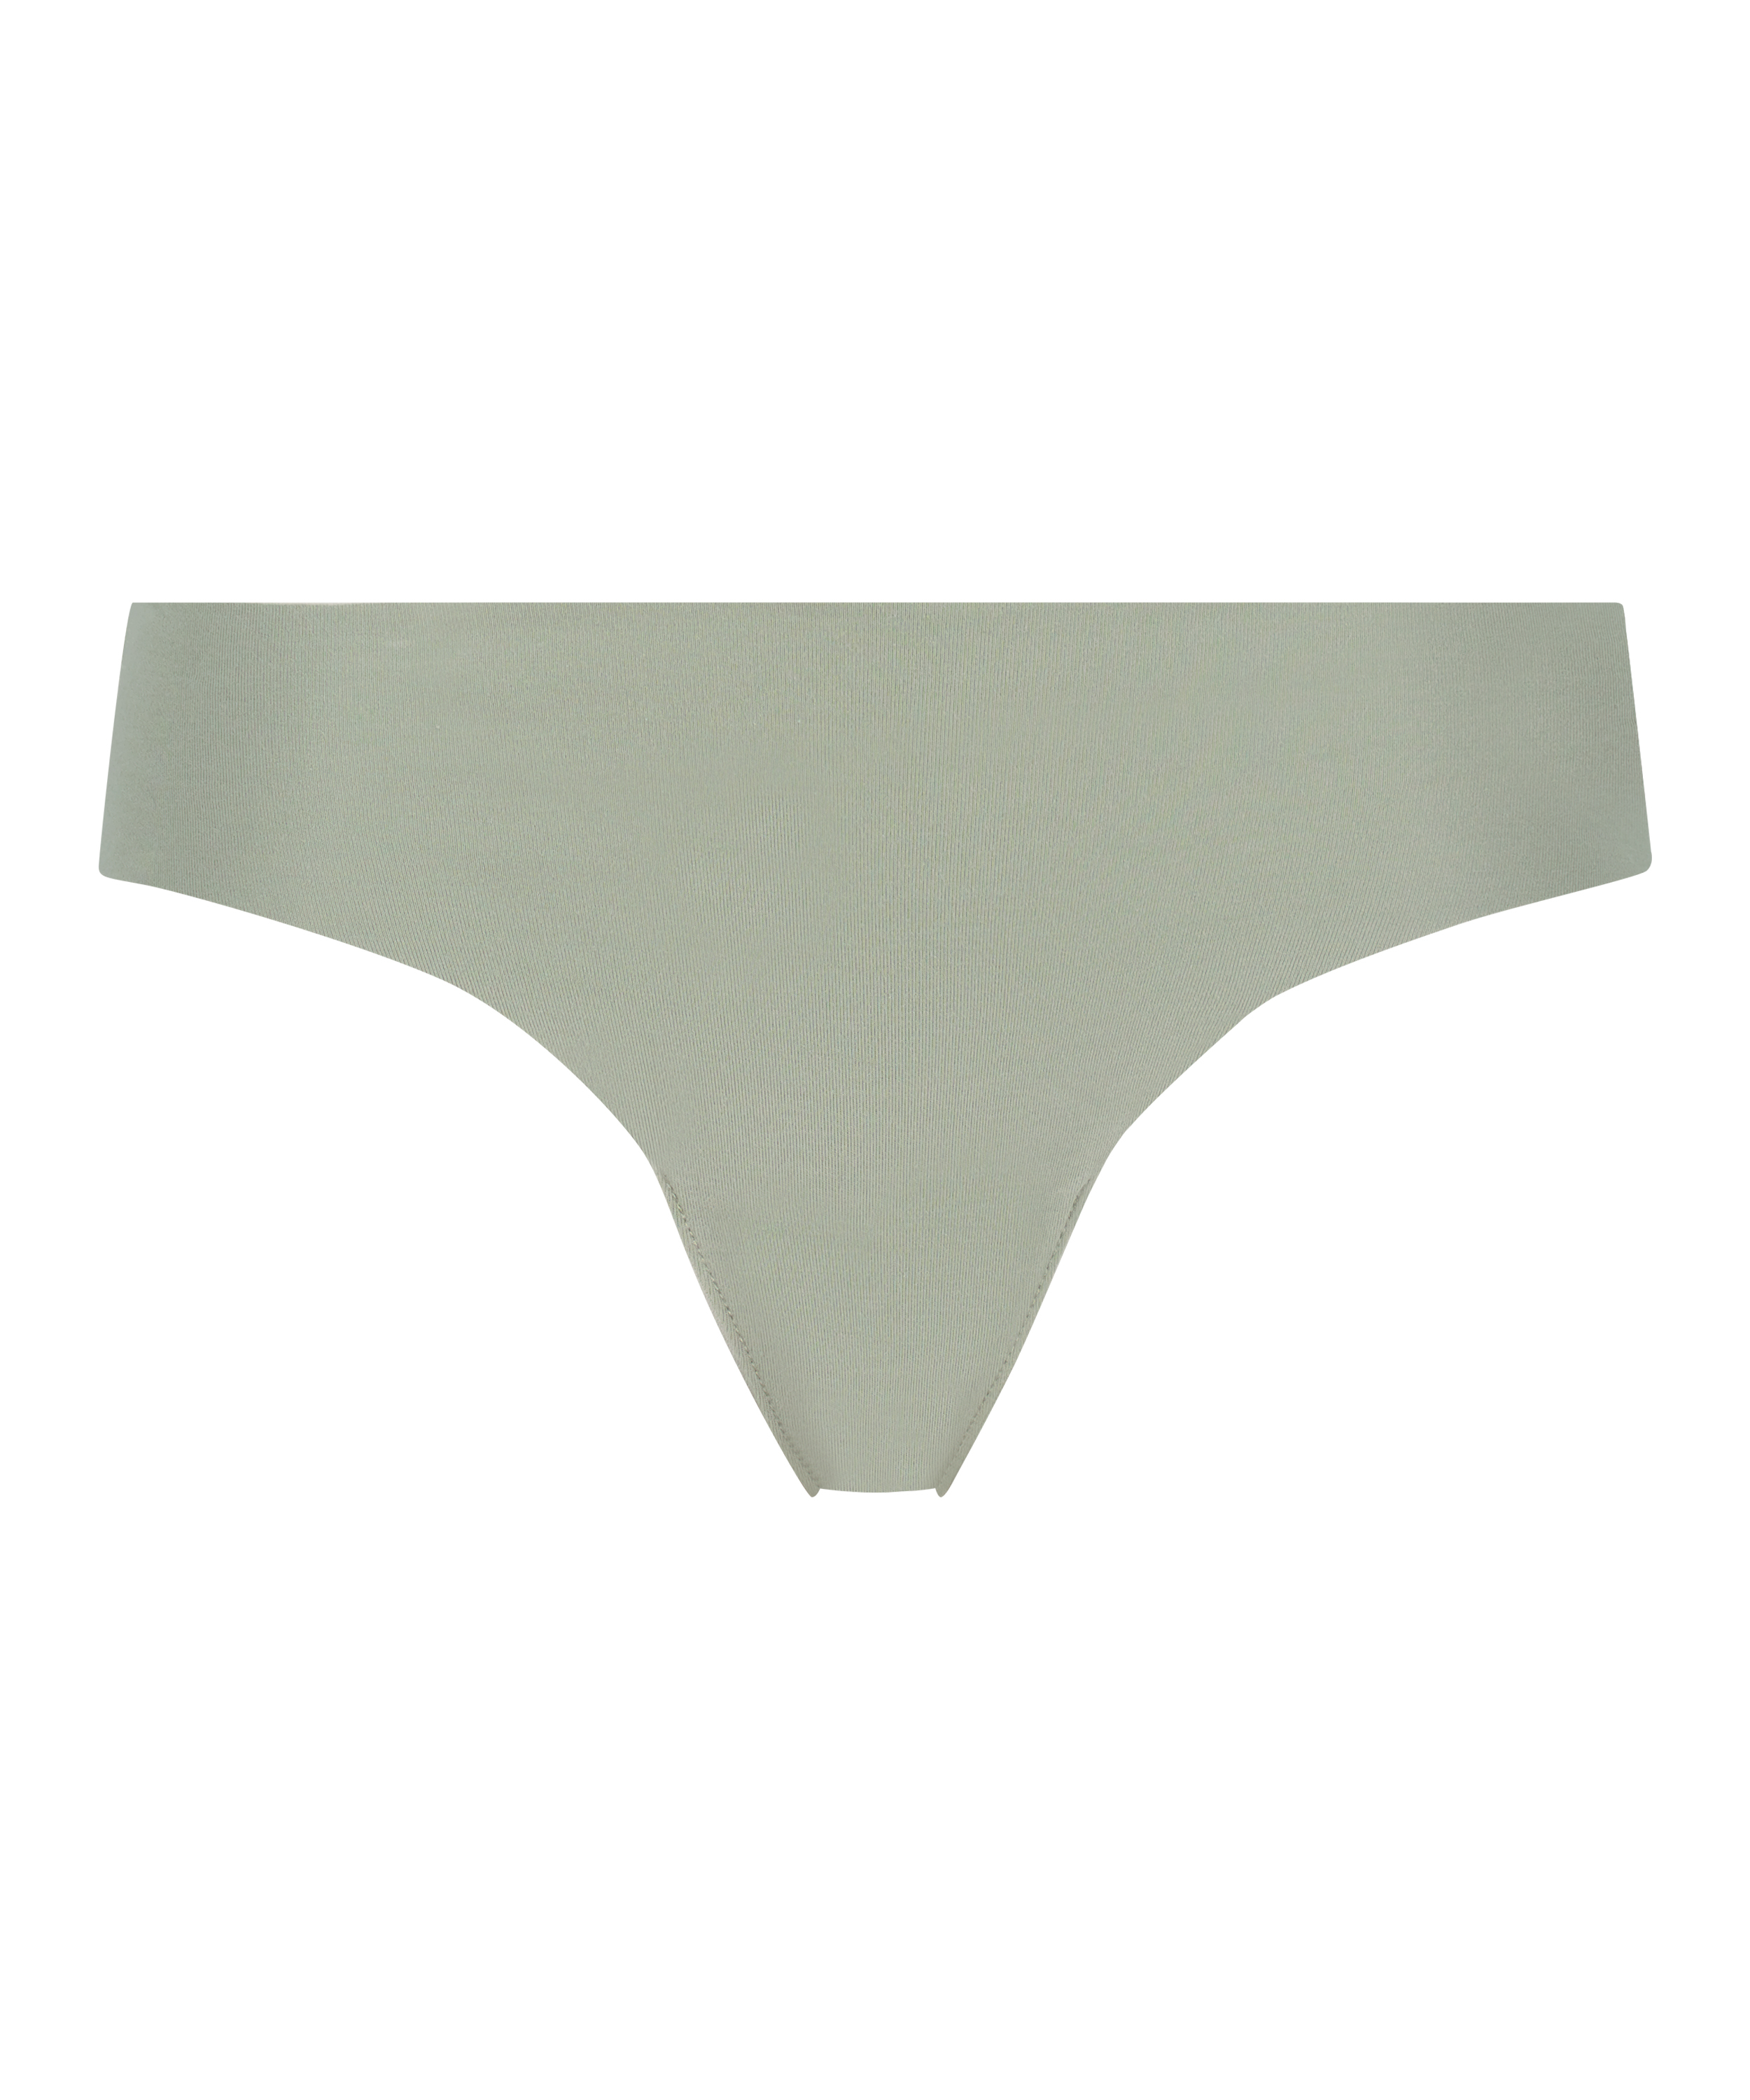 Invisible cotton thong, Green, main